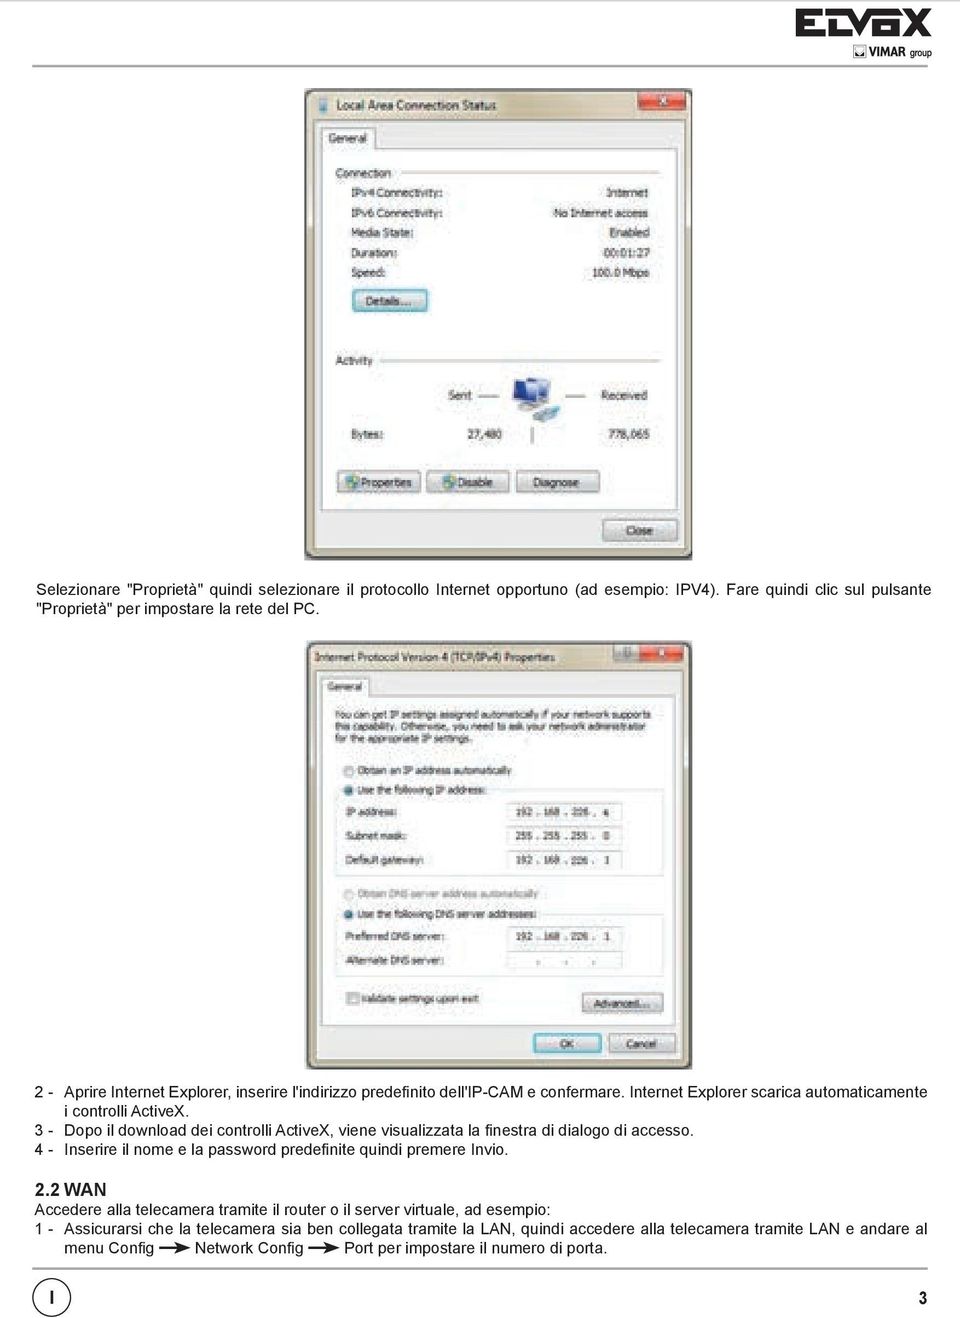 3 - Dopo il download dei controlli ActiveX, viene visualizzata la finestra di dialogo di accesso. 4 - Inserire il nome e la password predefinite quindi premere Invio. 2.